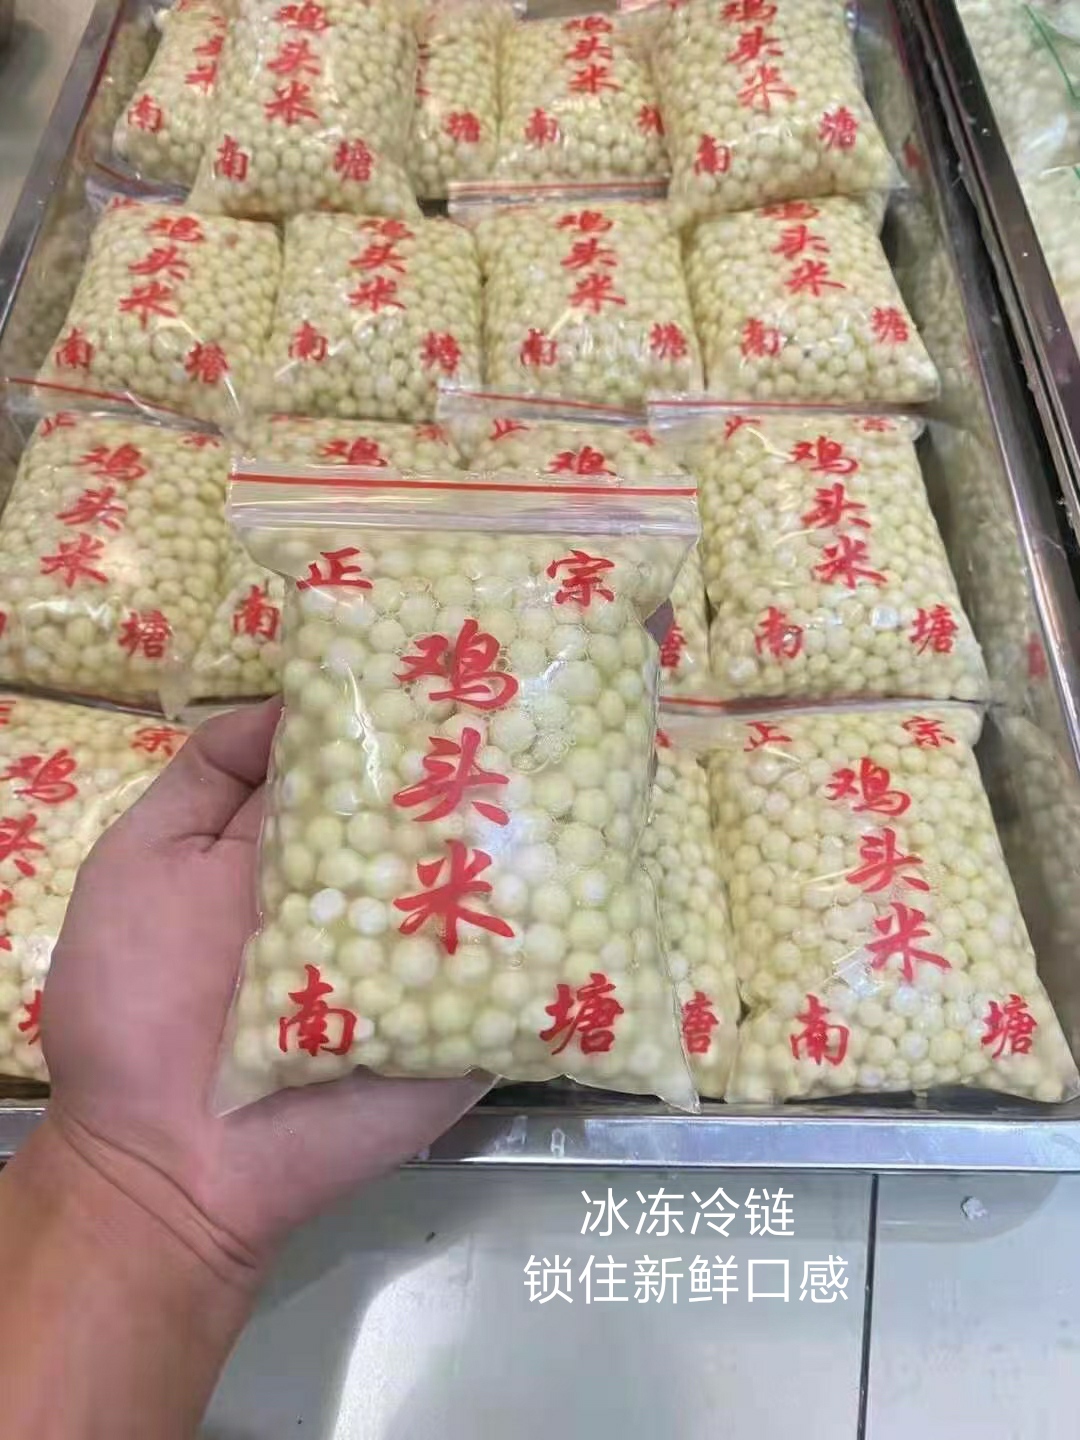 苏州鸡头米 芡实 水米 新鲜苏州苏芡农家基地自产